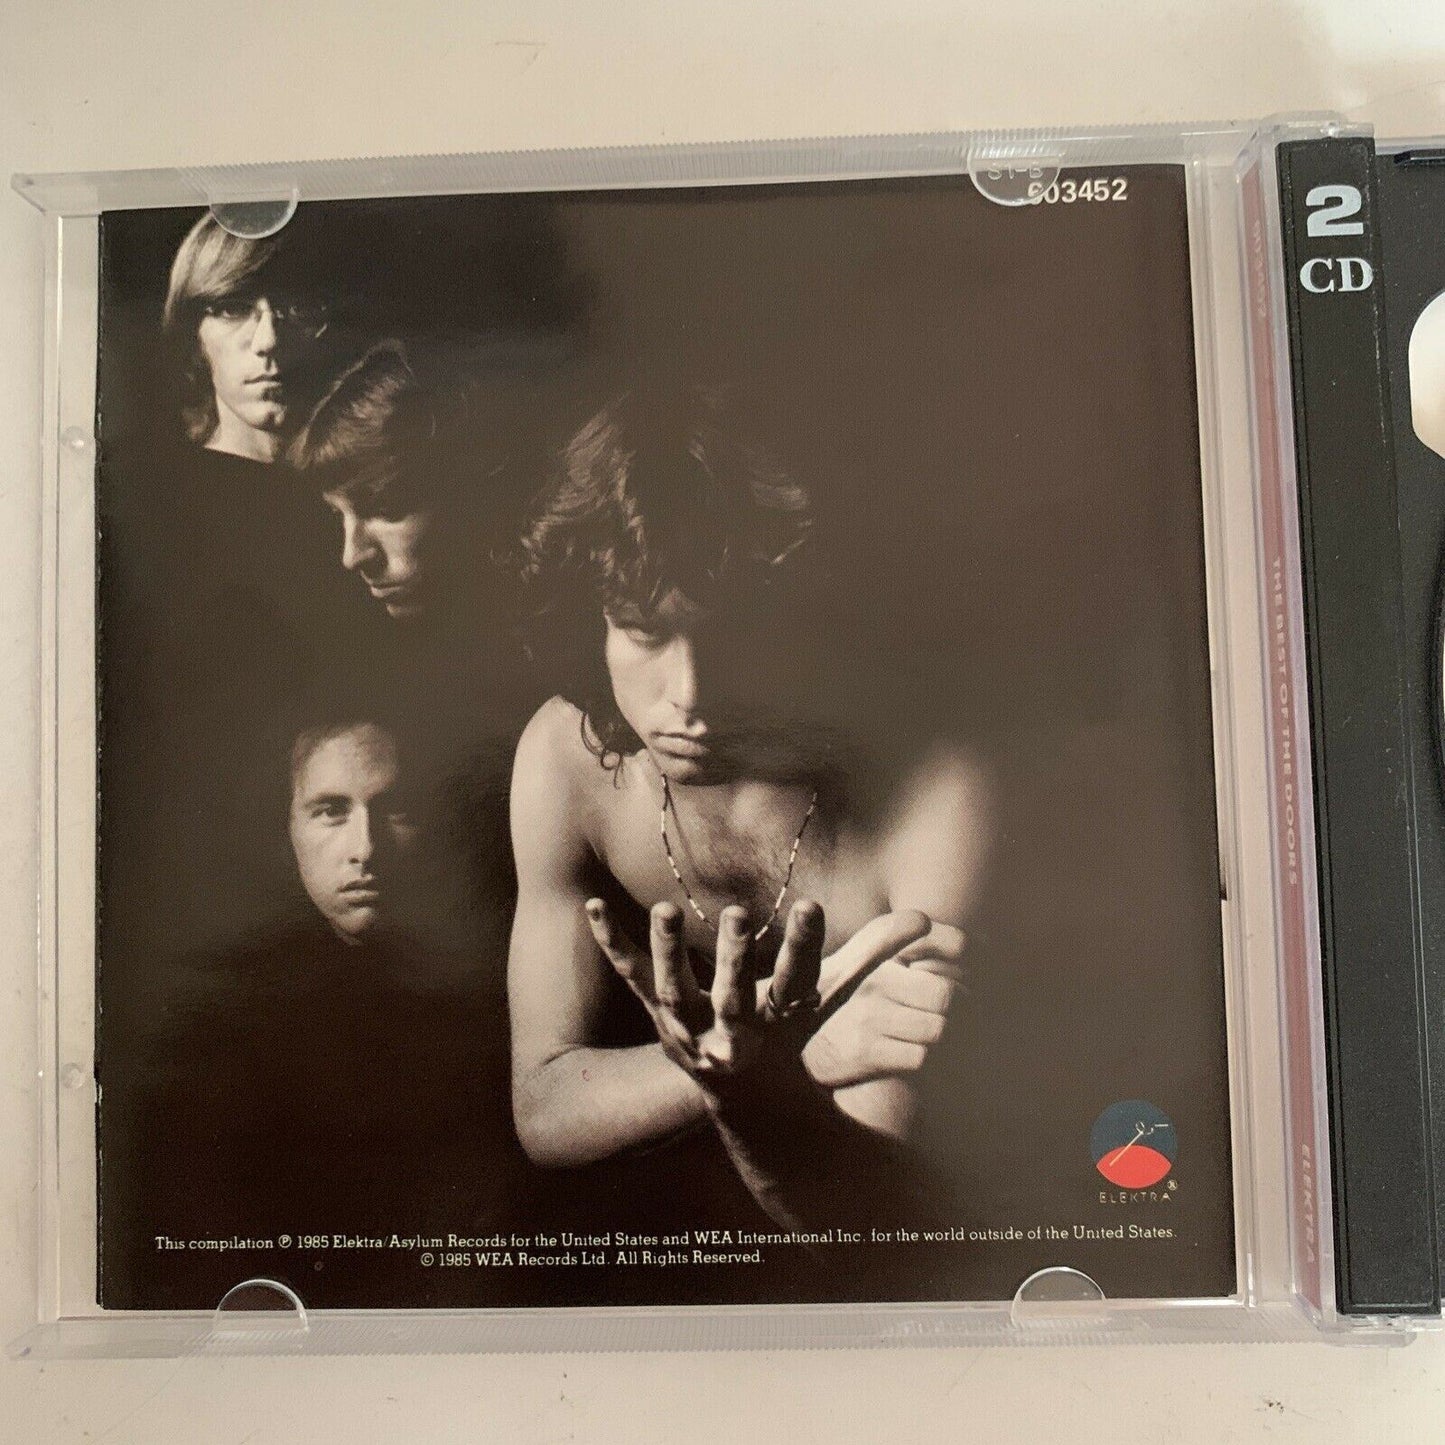 The Doors – The Best Of The Doors (CD, 2-Disc, 1985)